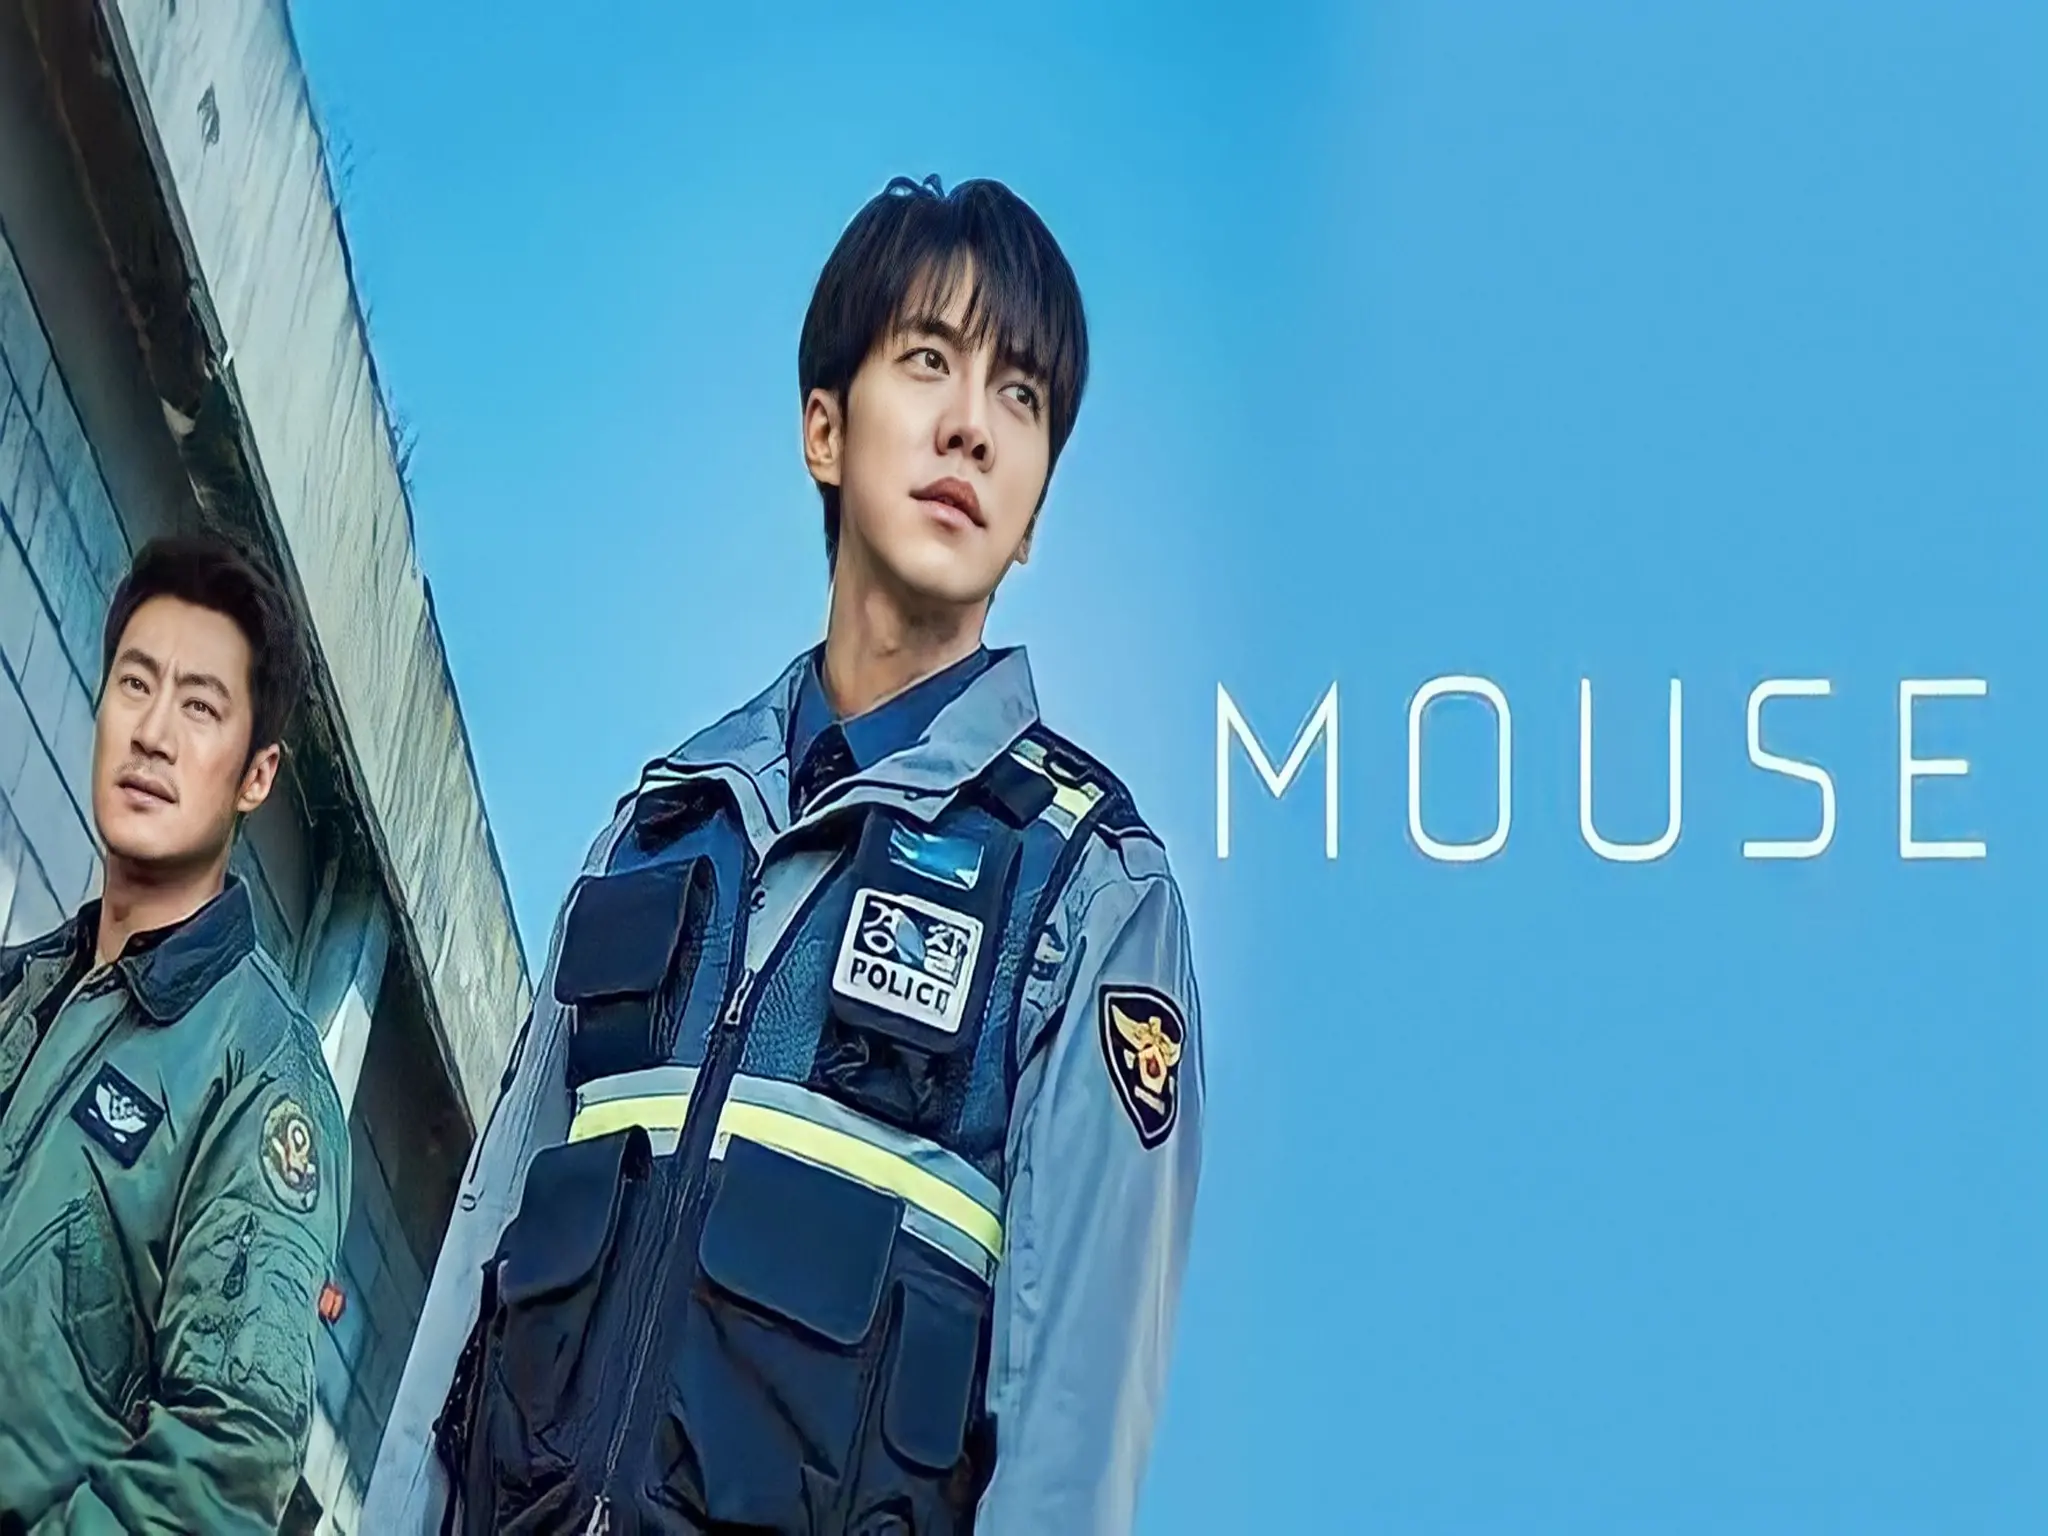 مواعيد عرض المسلسل الكوري "Mouse" الجديد والقنوات الناقلة له